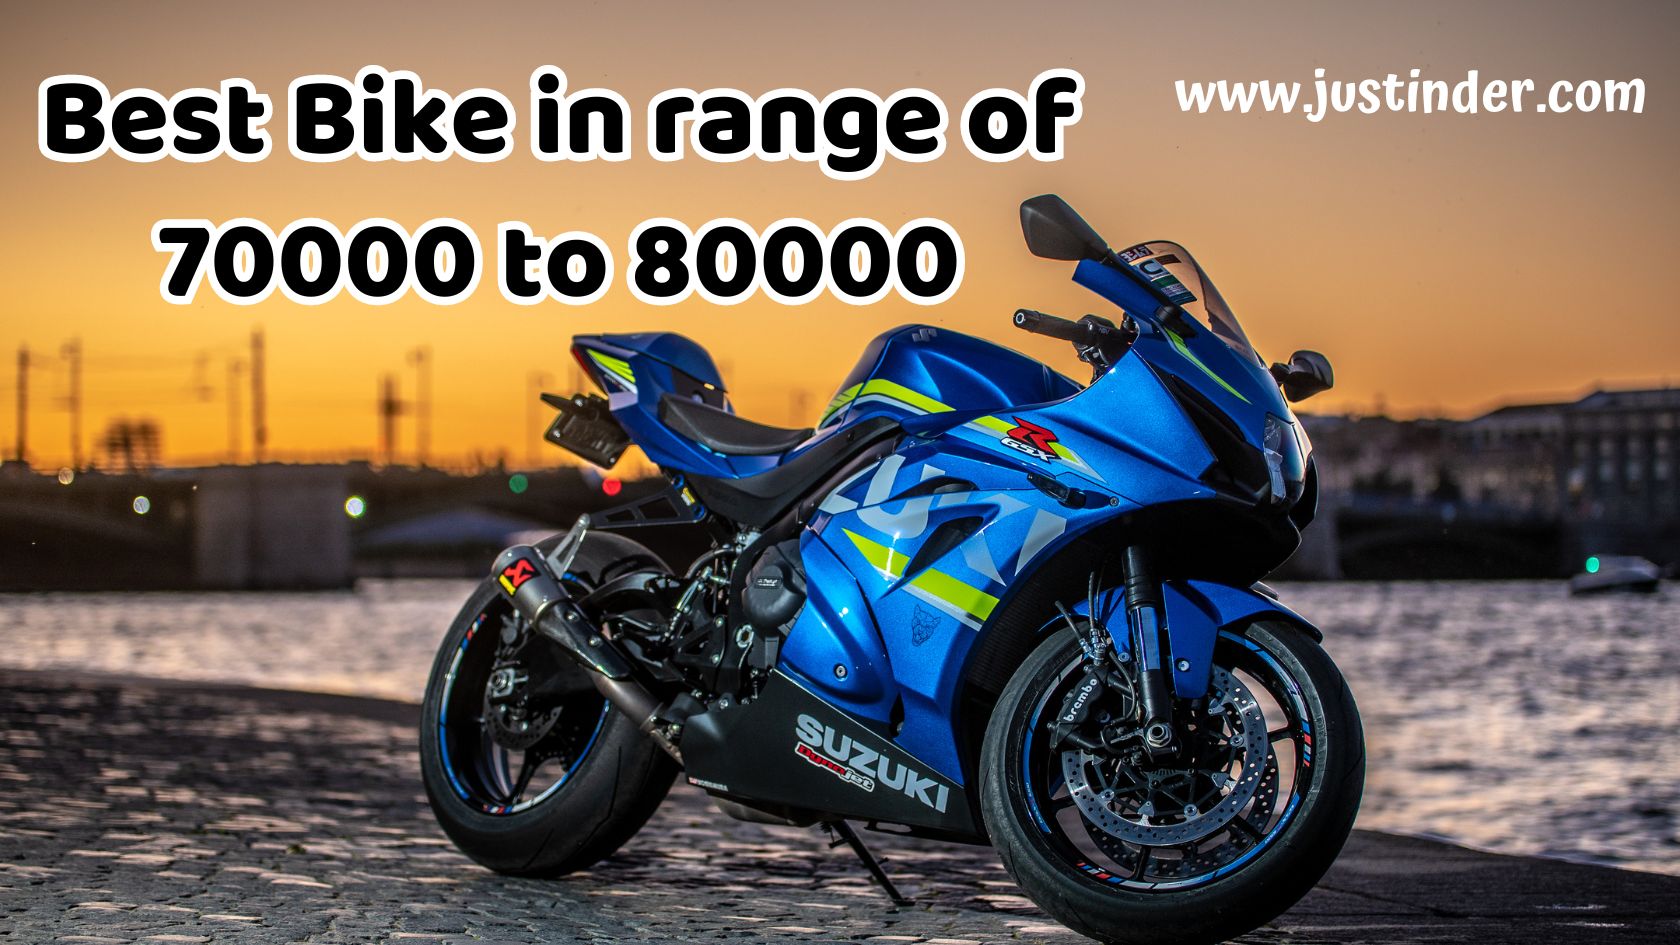 Best Bike in range of 70000 to 80000